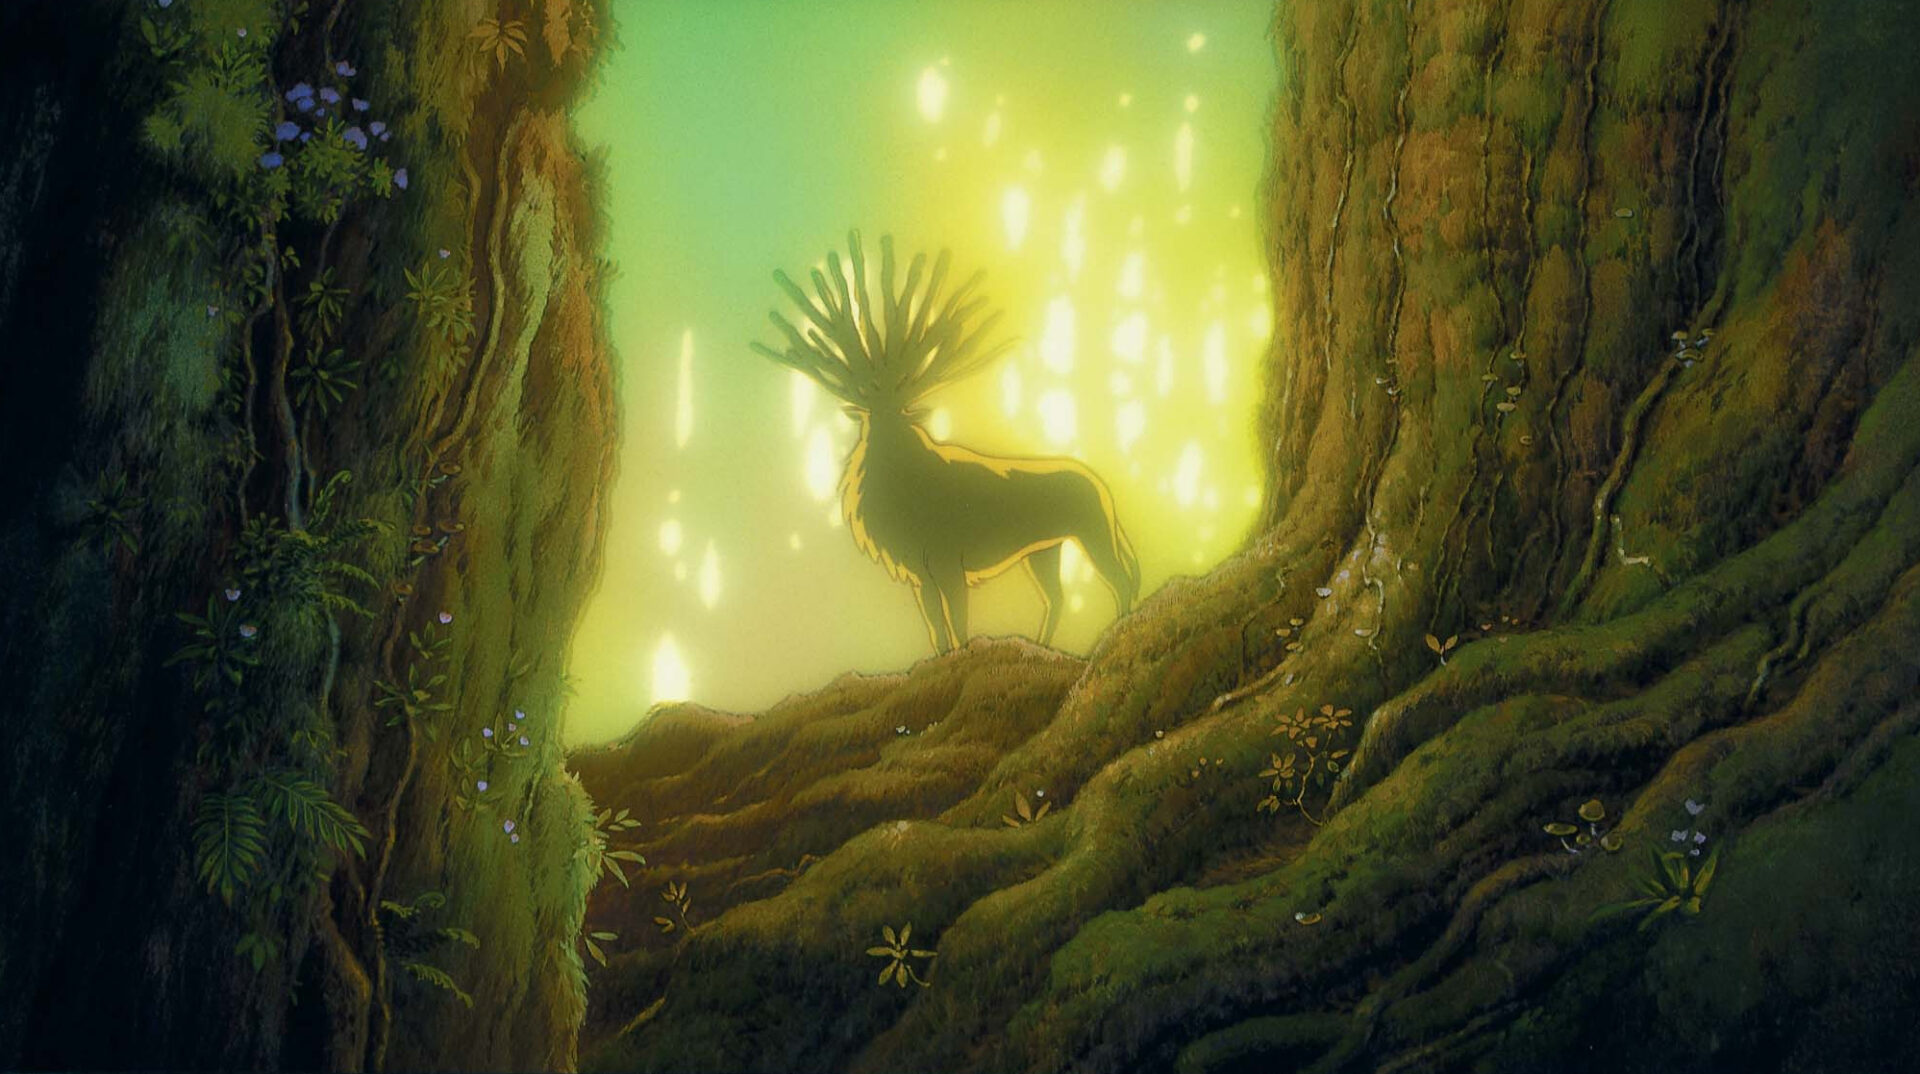 Prinzessin Mononoke: Das Bild zeigt einen Hirsch mit einem mit einem Geweih mit 13 Enden. Er steht zwischen zwei großen Bäumen, hinter ihm leuchtet die Sonne golden